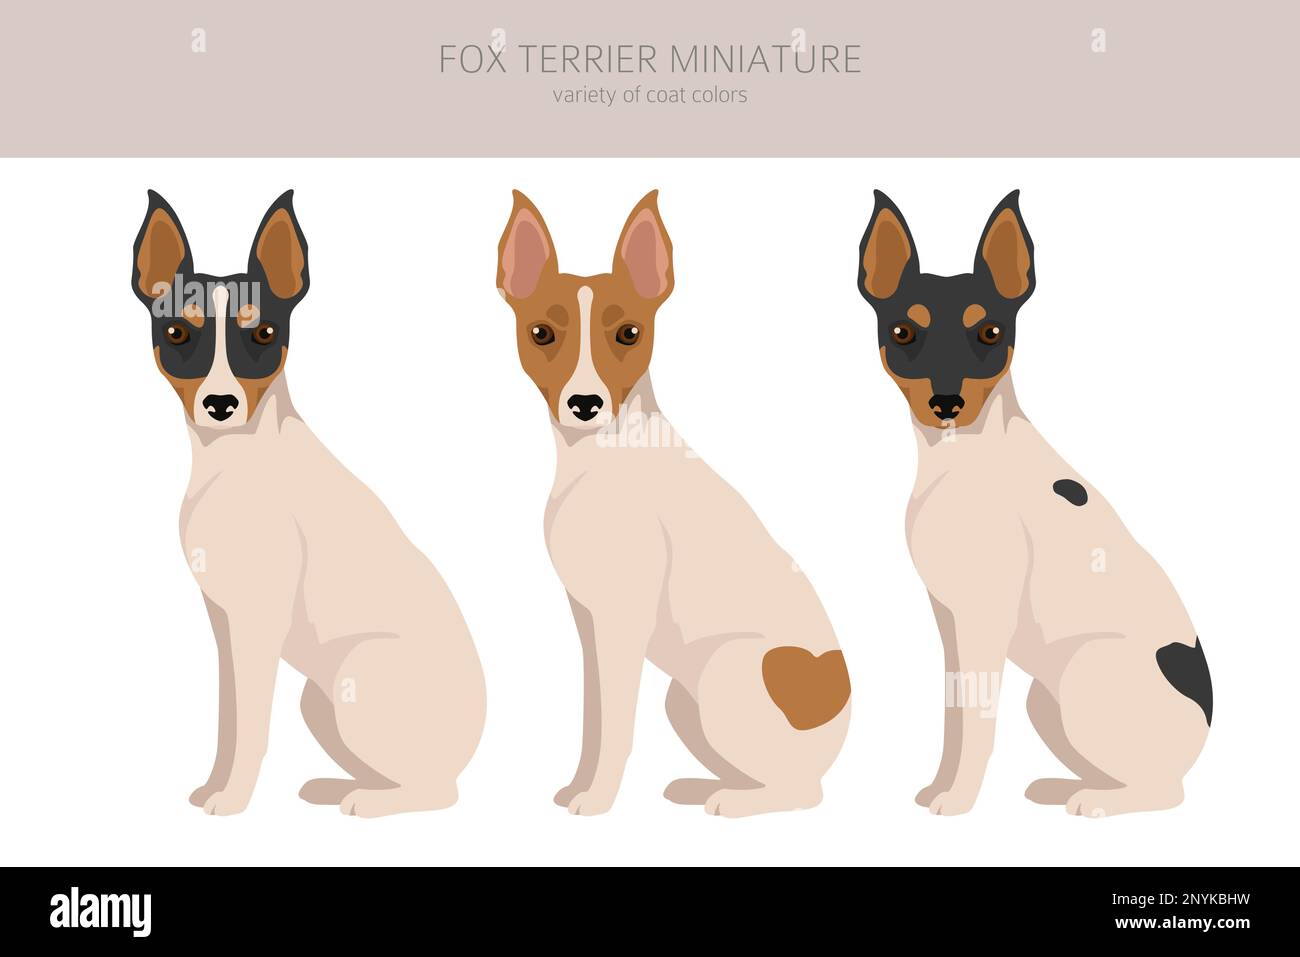 Miniatur-Clipart von Fox Terrier. Verschiedene Fellfarben eingestellt. Vektorgrafik Stock Vektor